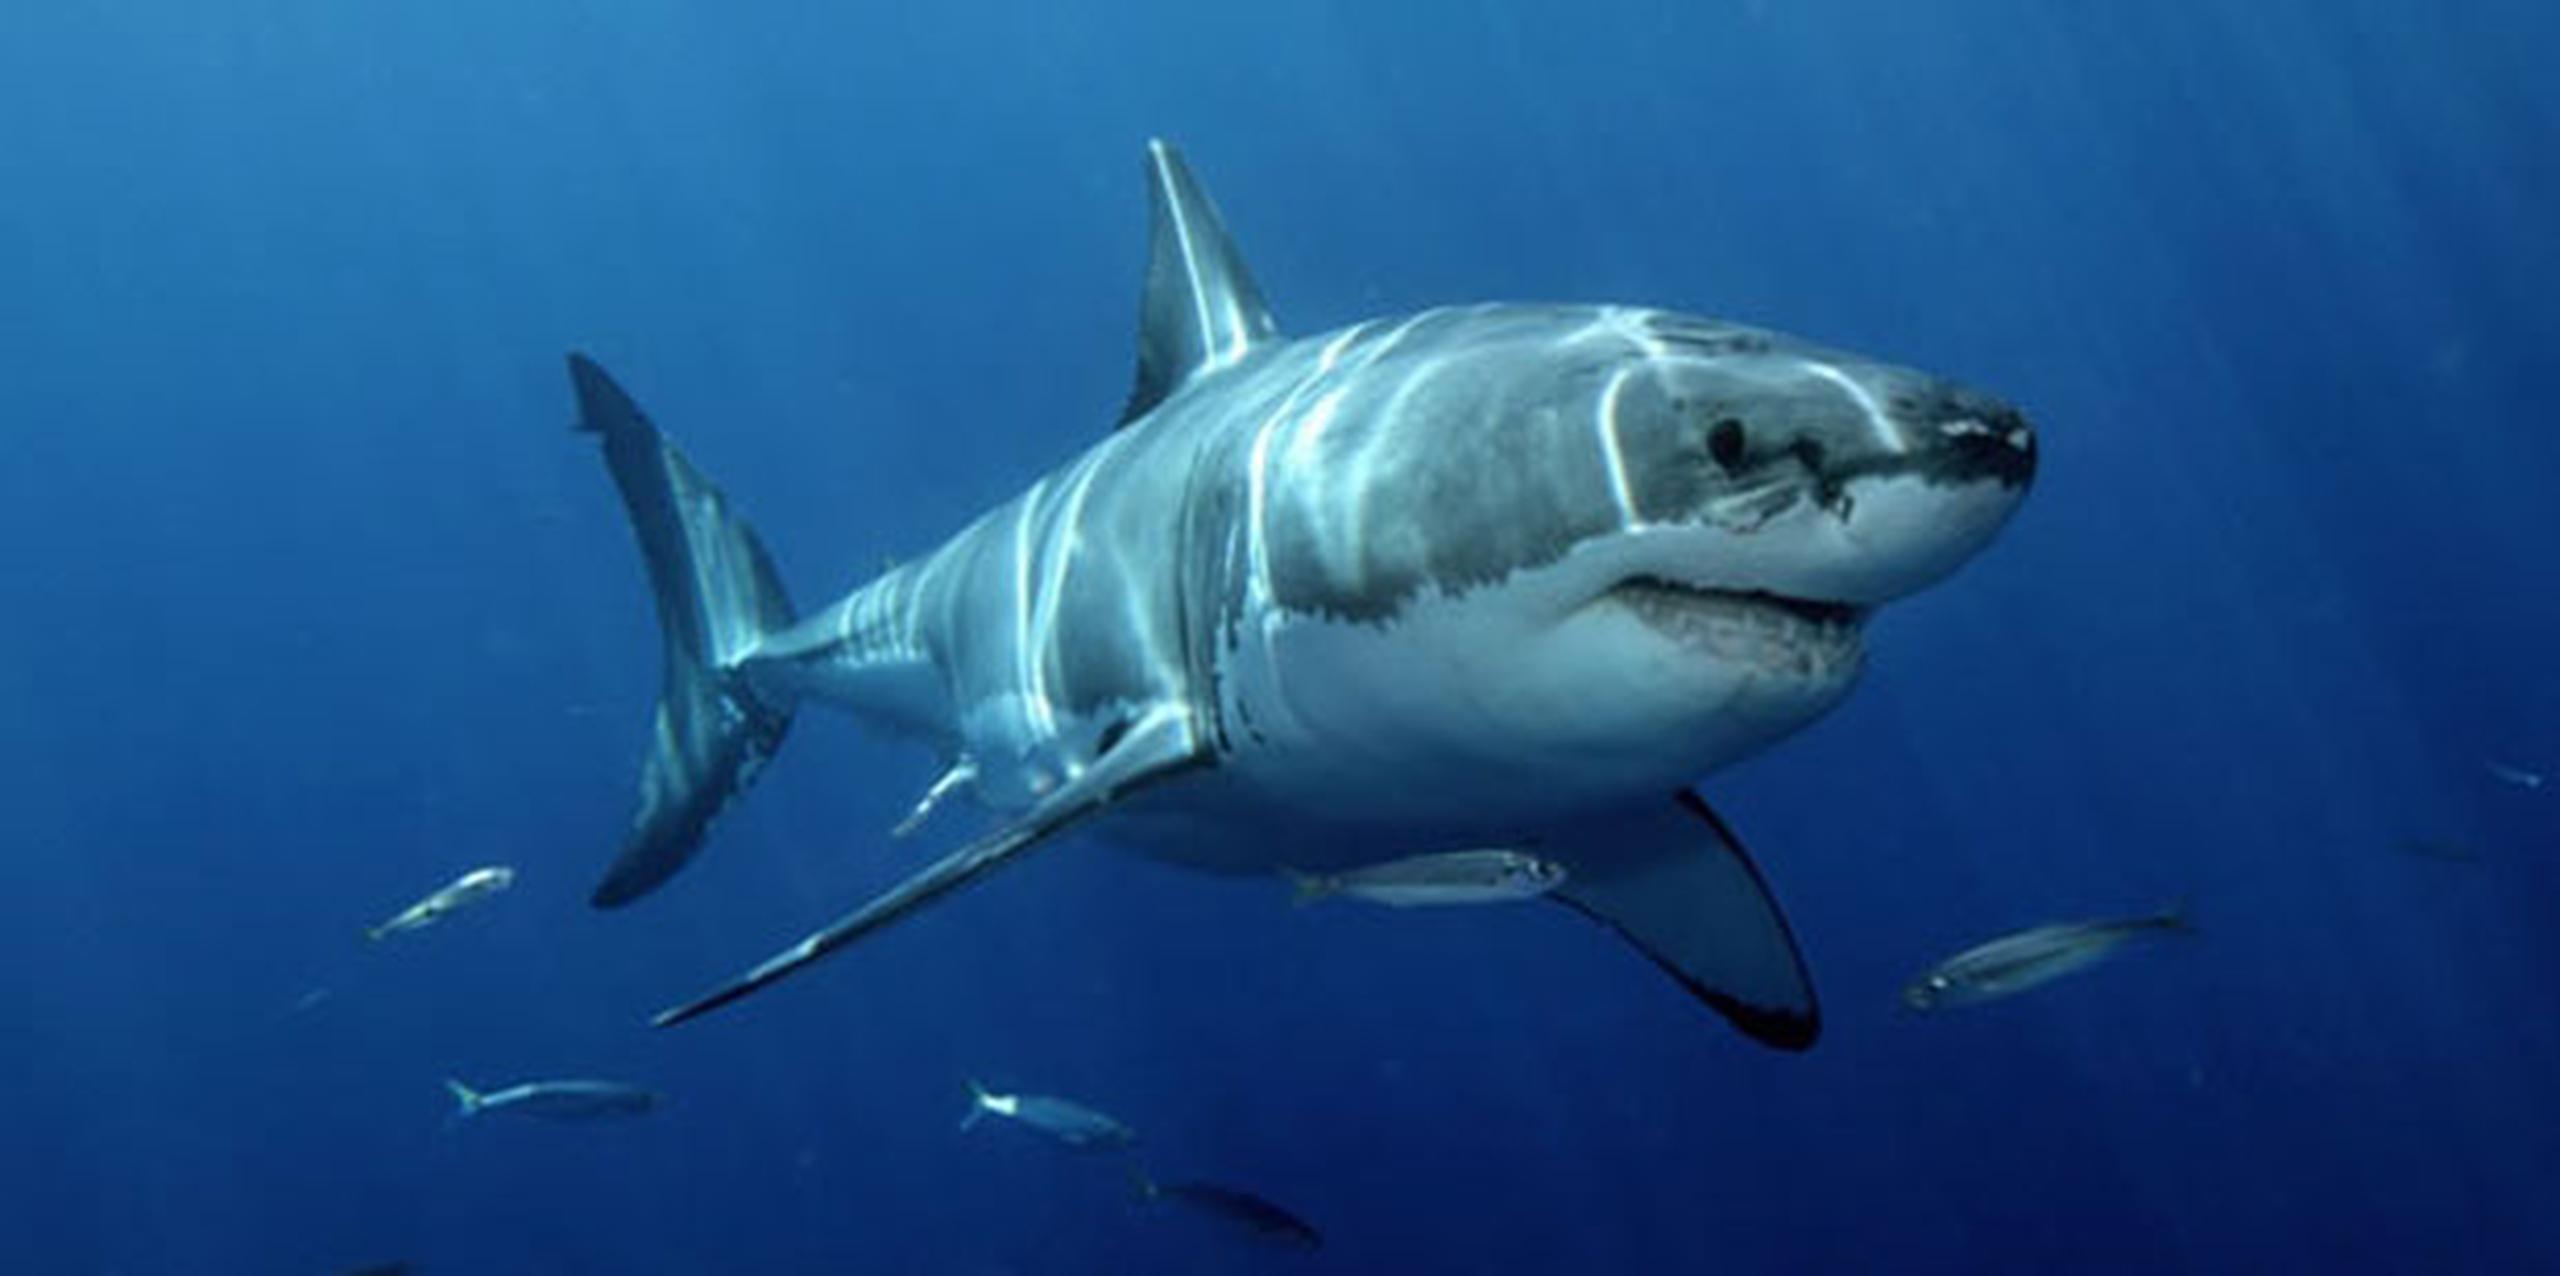 El hombre nadaba a unos 55 metros (60 yardas) de la costa cuando el tiburón lo atacó, dijeron las autoridades. (Archivo)